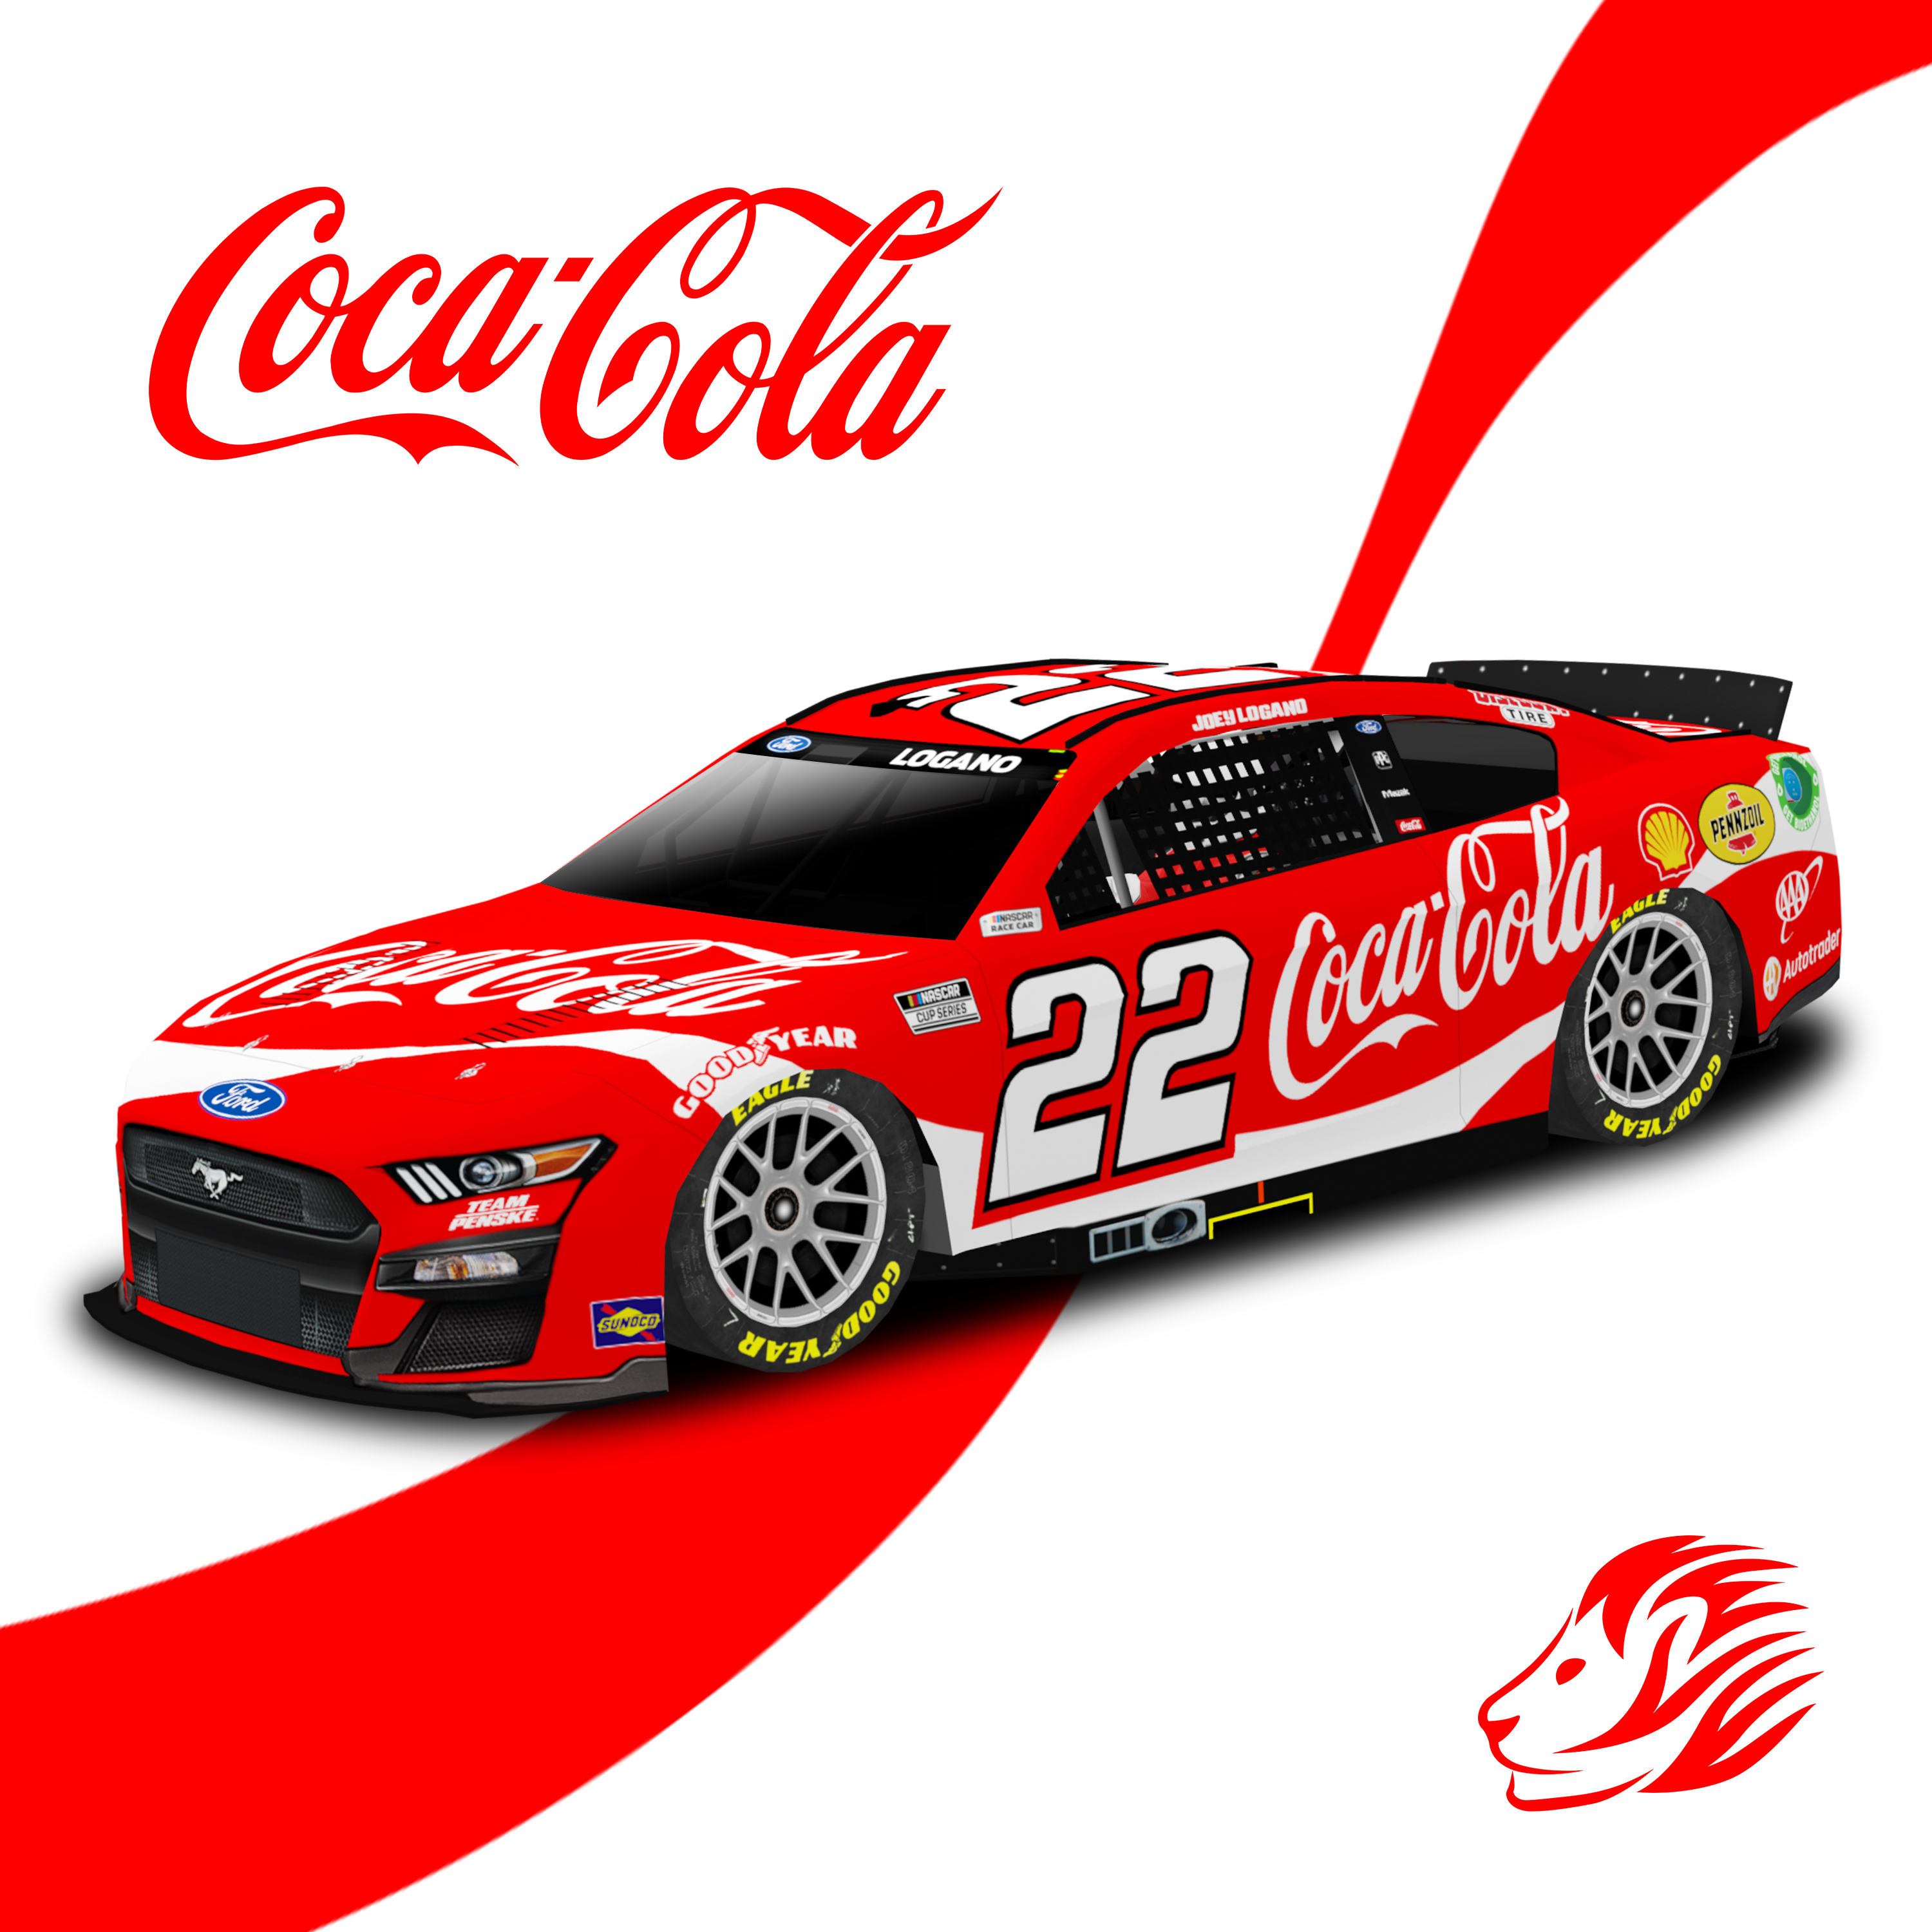 22 coca cola.png